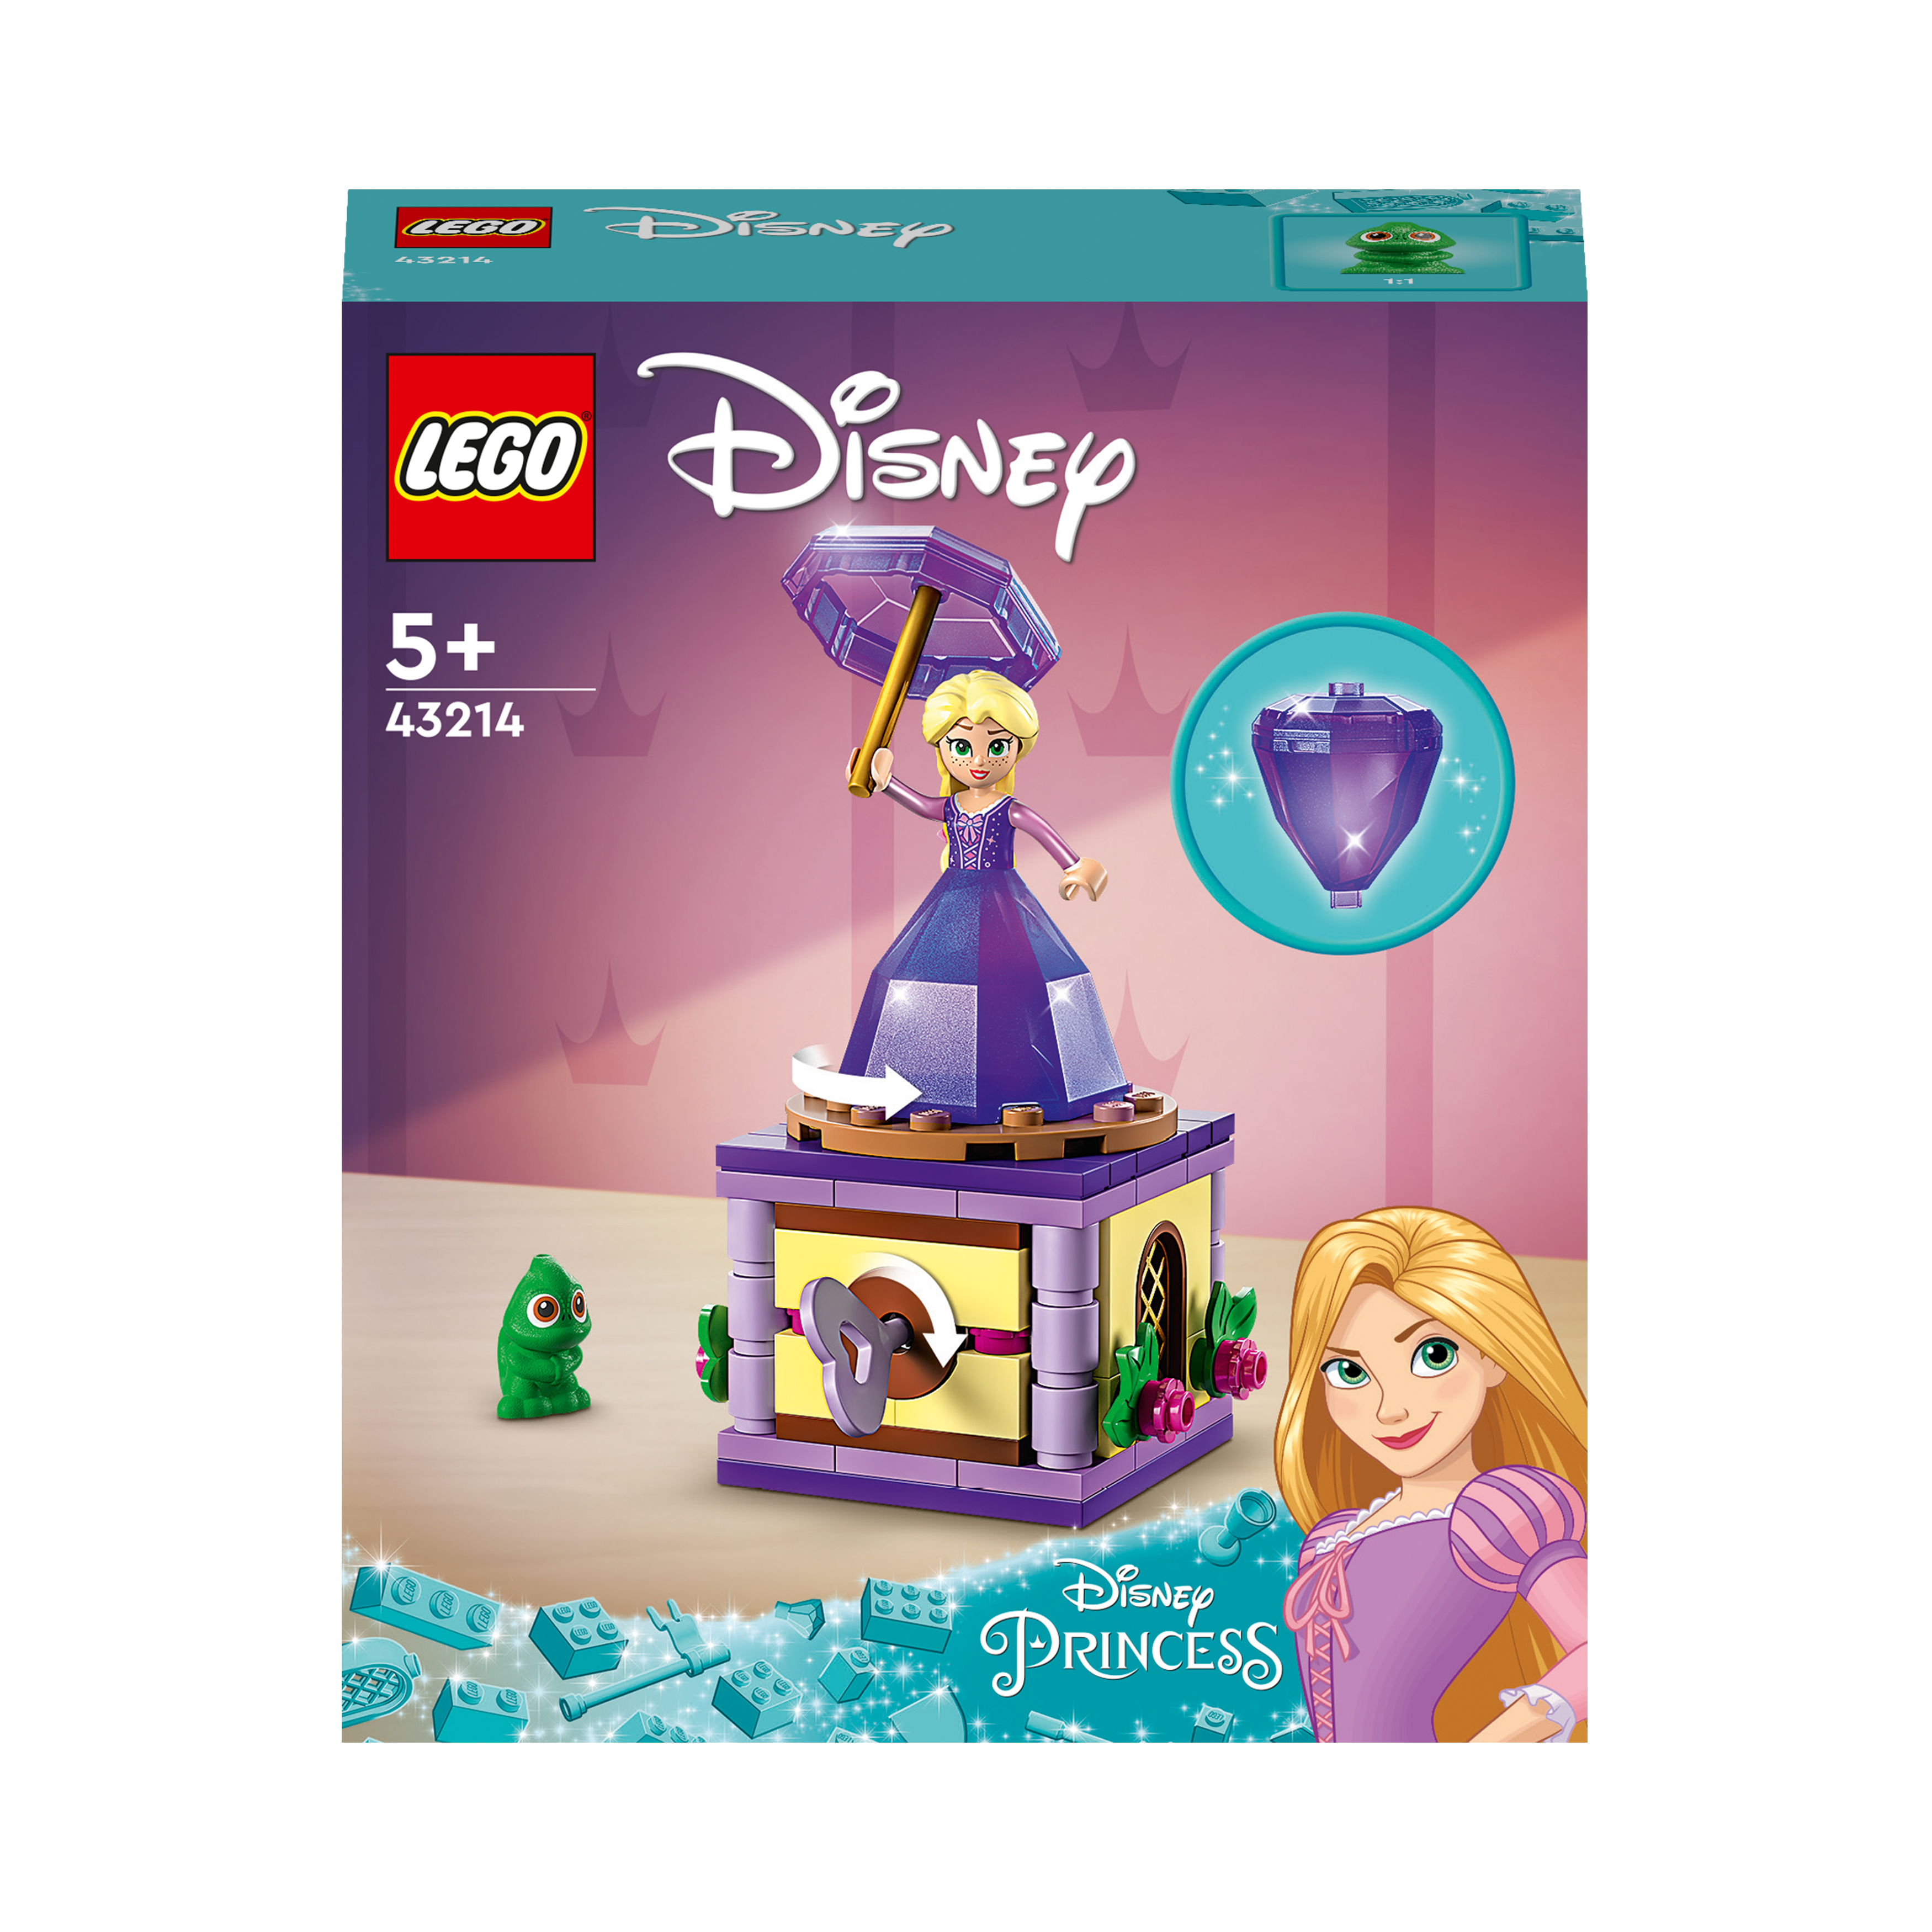 LEGO Disney Mehrfarbig Bausatz, 43214 Rapunzel-Spieluhr